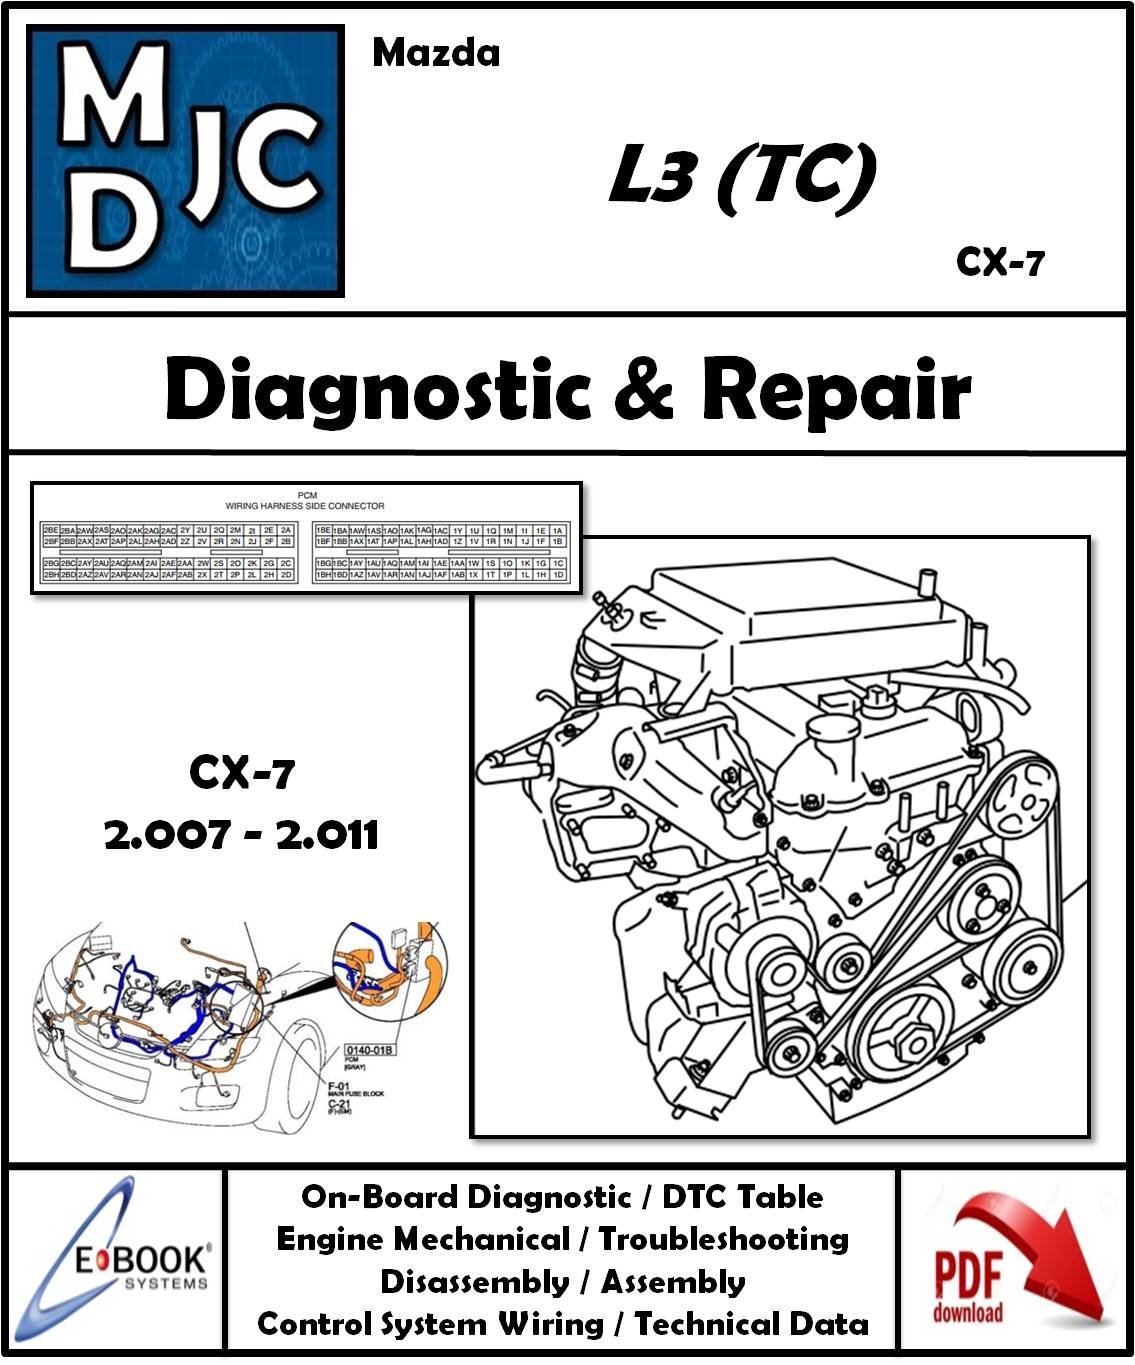 Manual de Taller (Diagnóstico y Reparación) Motor Mazda L3-TC (2.3 L) (CX-7 / 07-11)